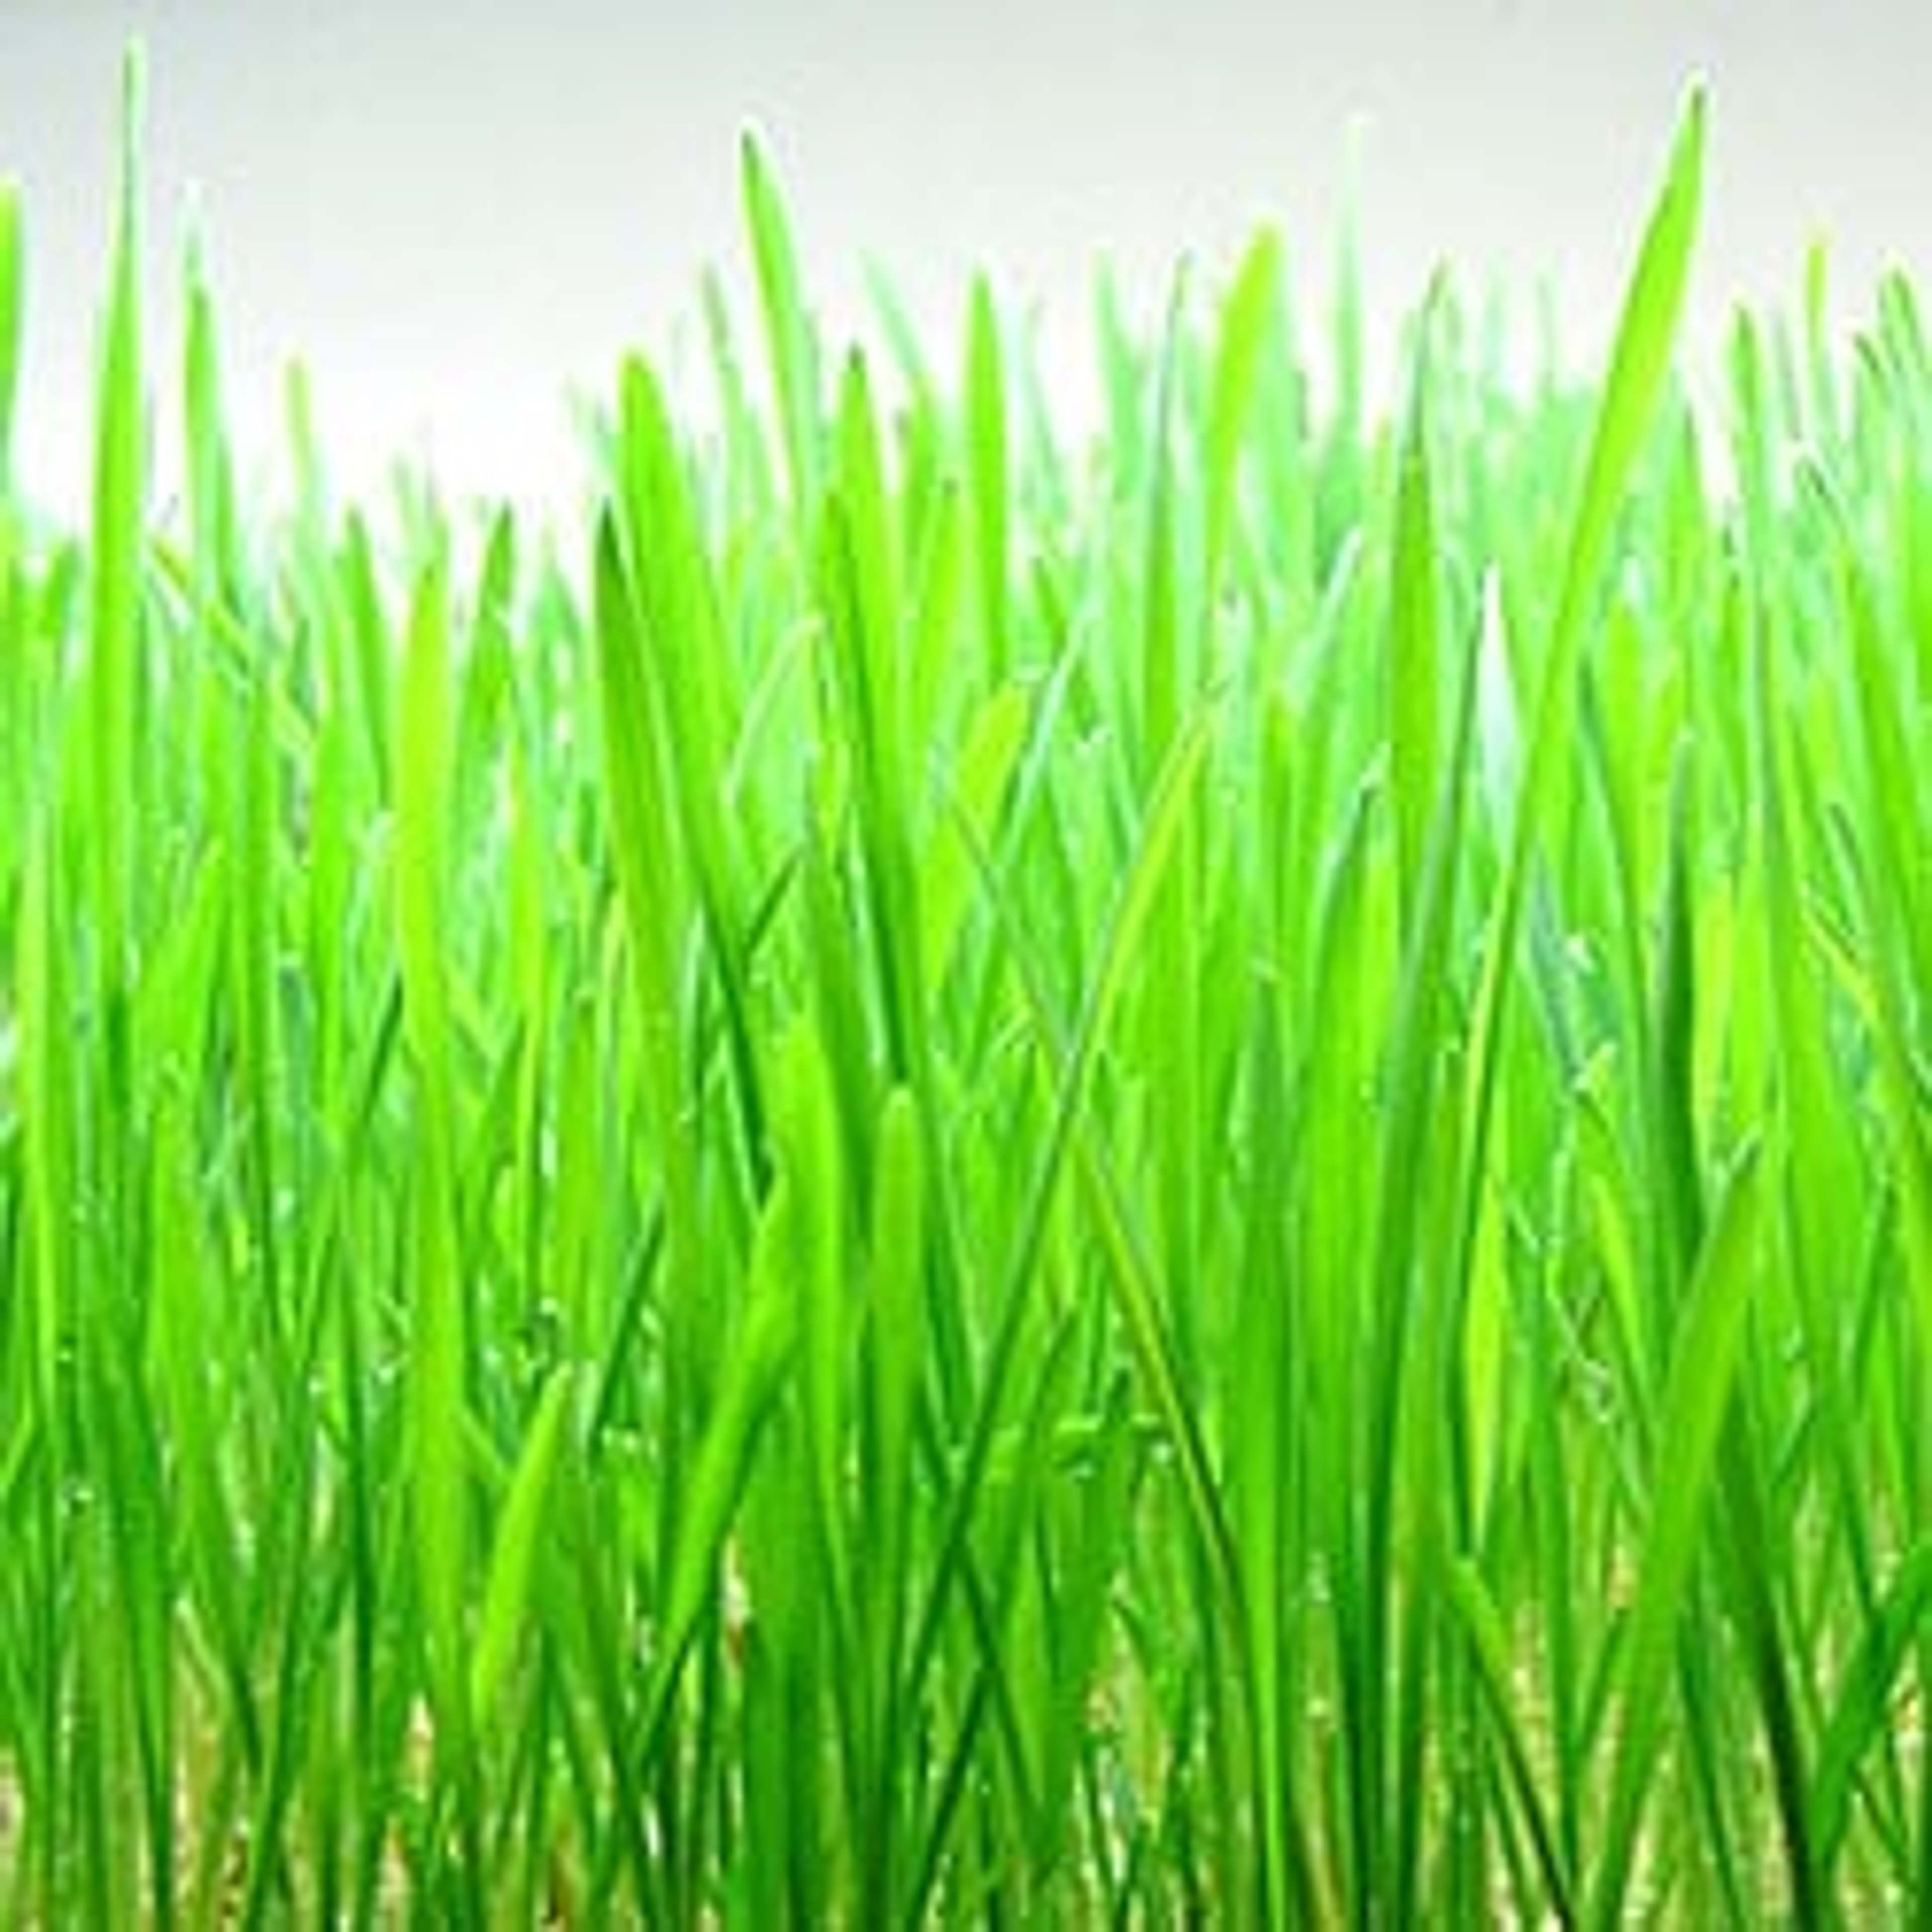 Weizengras ist eine ausgezeichnete Quelle von Aminosäuren, Chlorophyll, Vitaminen und Mineralstoffen und kann dazu beitragen, Ihre Gesundheit zu verbessern.